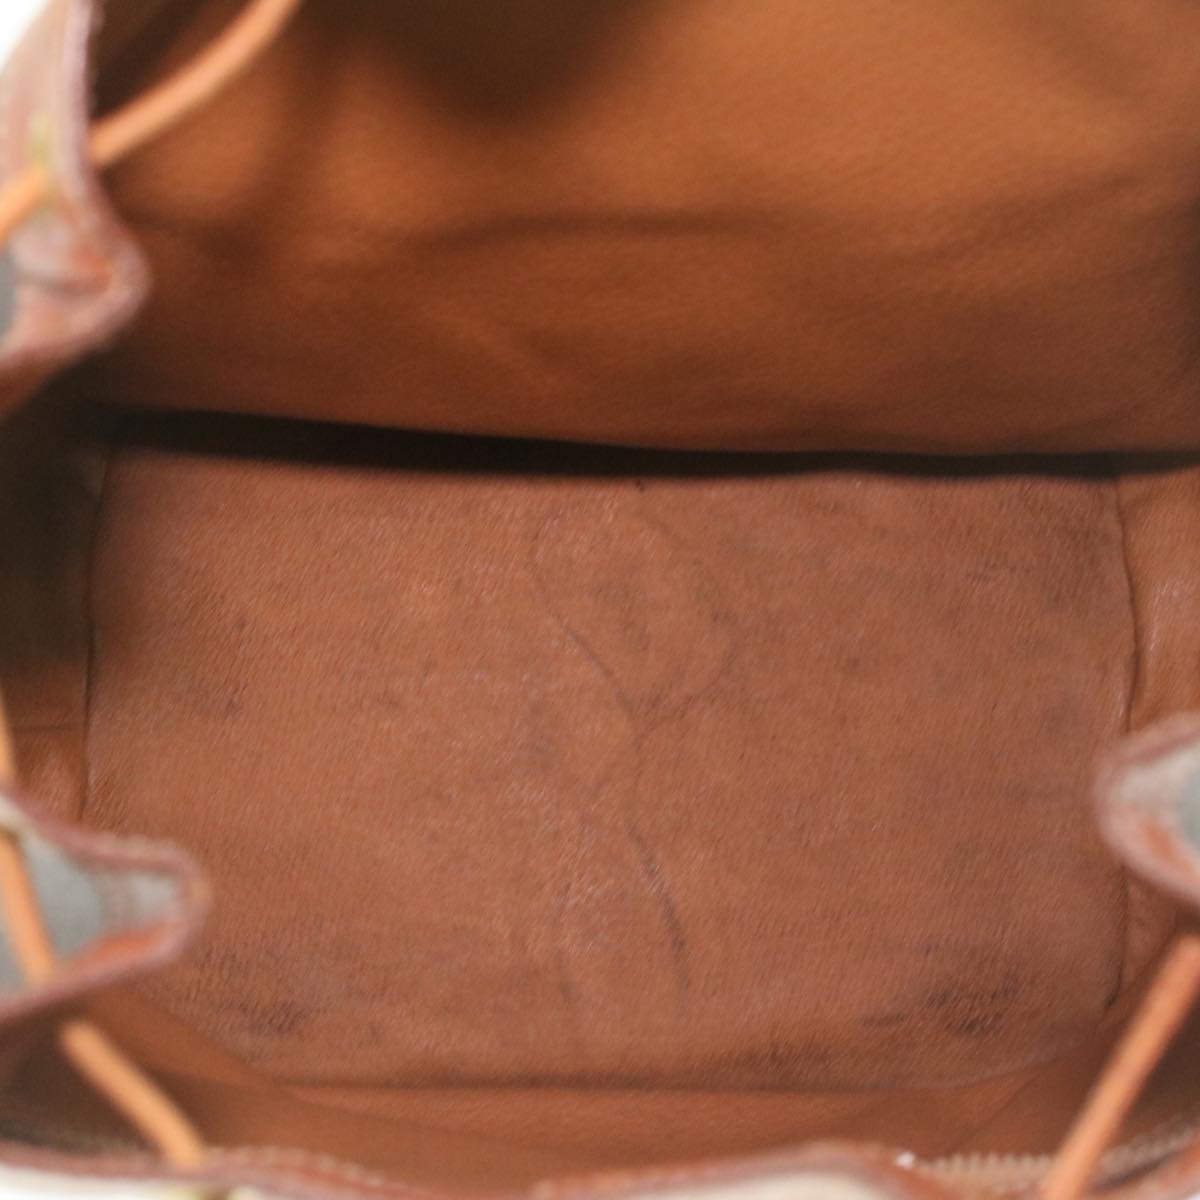 CELINE Macadam Canvas Shoulder Bag PVC Leather Brown Auth 38054